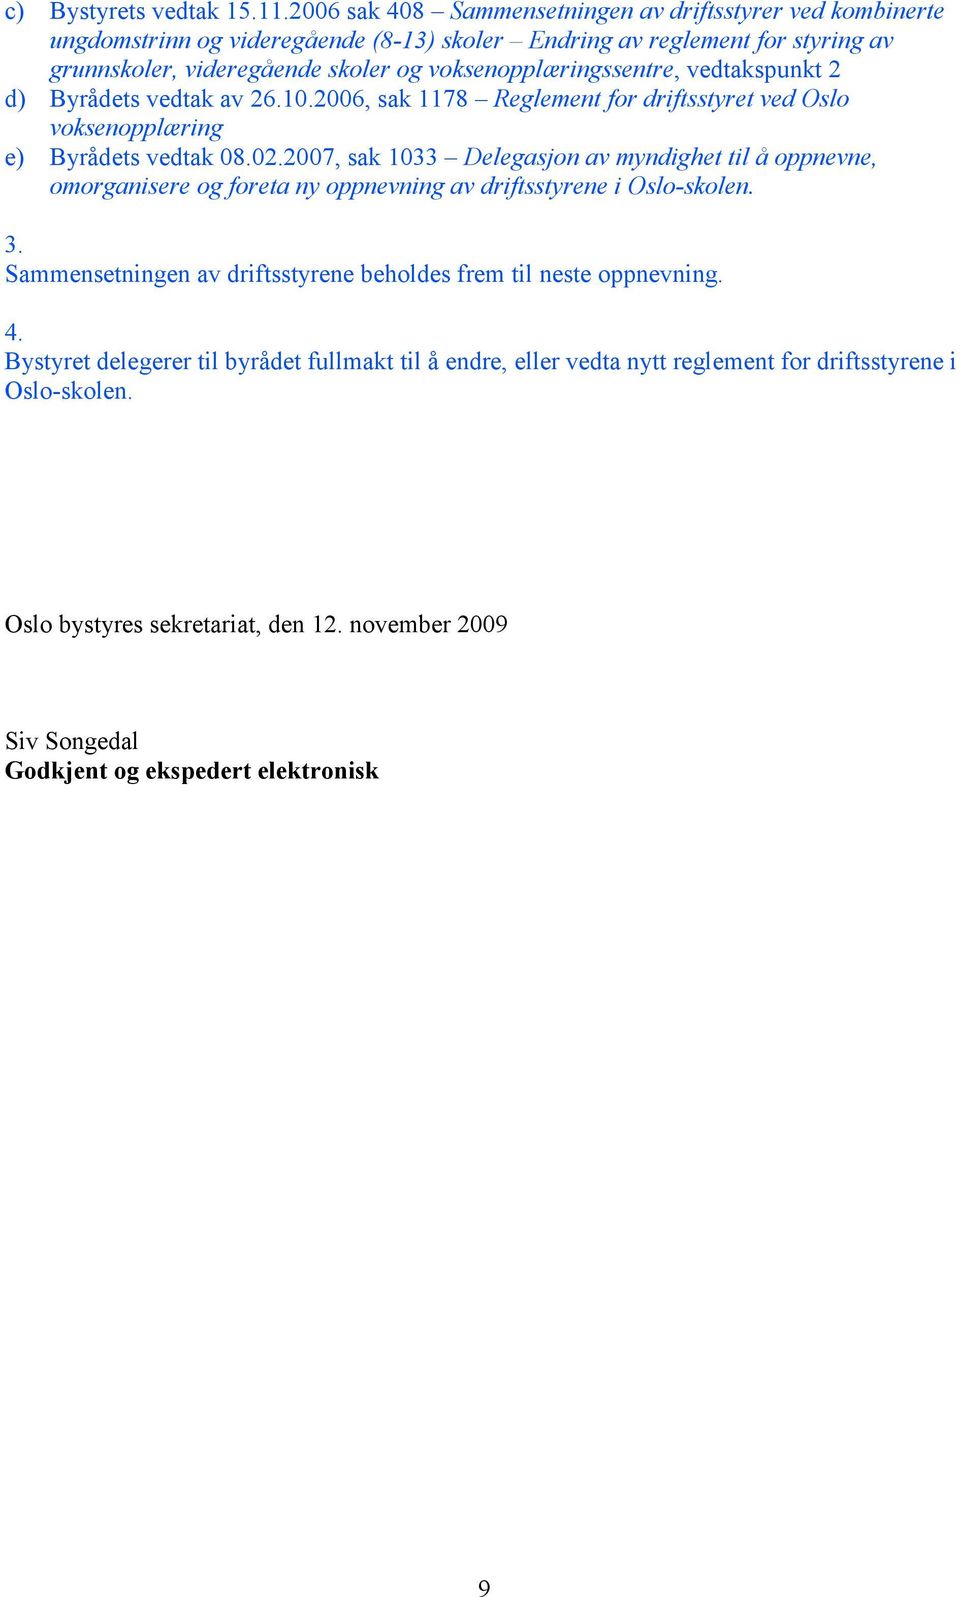 voksenopplæringssentre, vedtakspunkt 2 d) Byrådets vedtak av 26.10.2006, sak 1178 Reglement for driftsstyret ved Oslo voksenopplæring e) Byrådets vedtak 08.02.